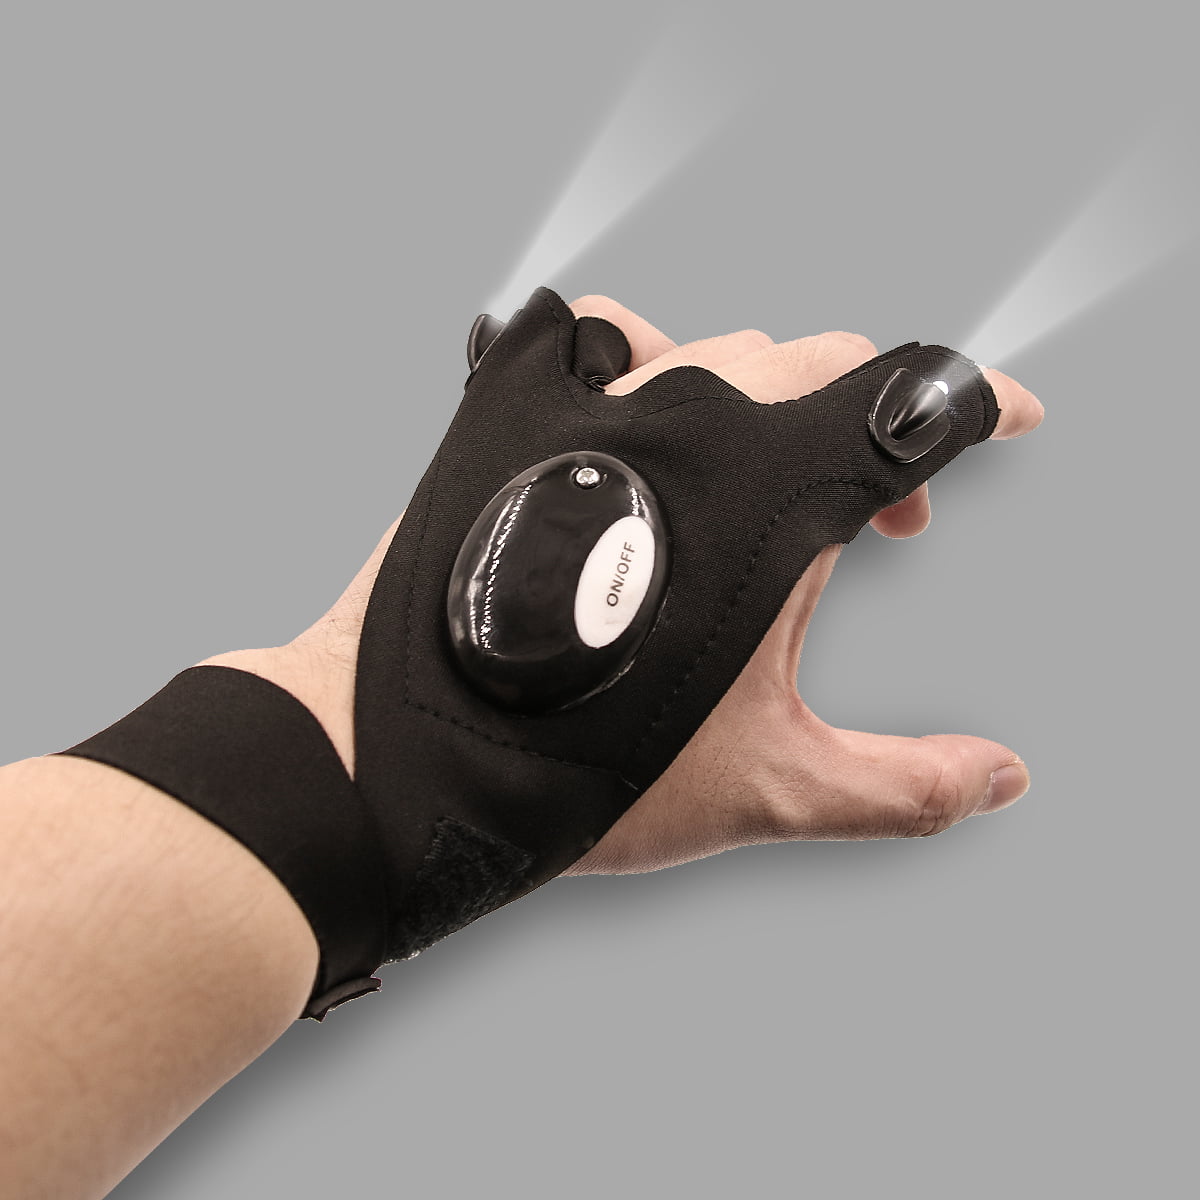 Details about   Black Multifunctional LED Finger Light Gloves Camping N0W2 Gloves Lightin R1Y4 